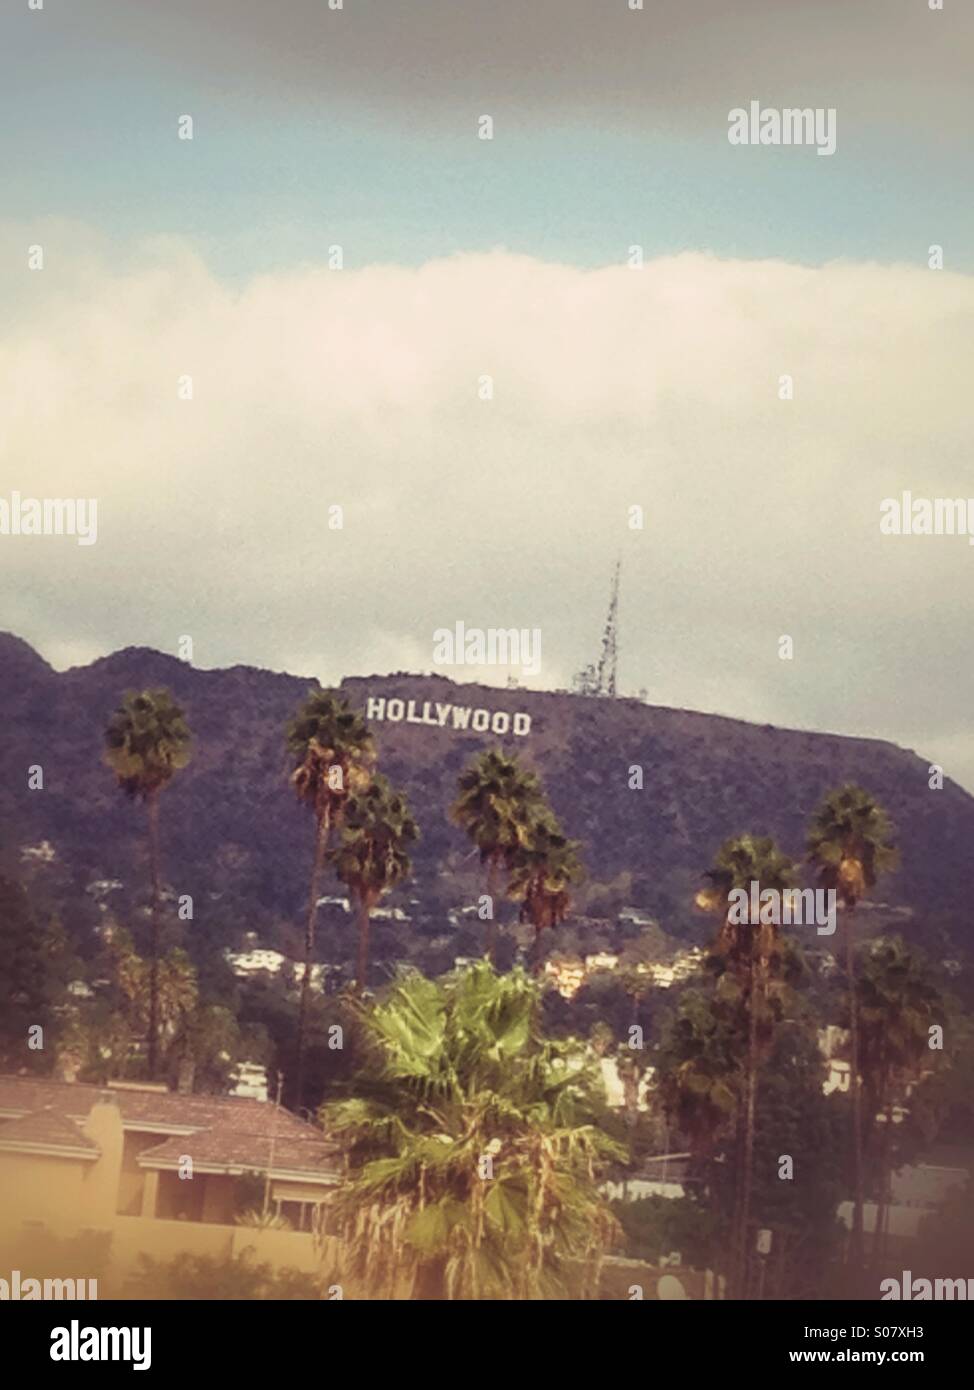 Hollywood-Schild aus der Ferne gesehen. Stockfoto